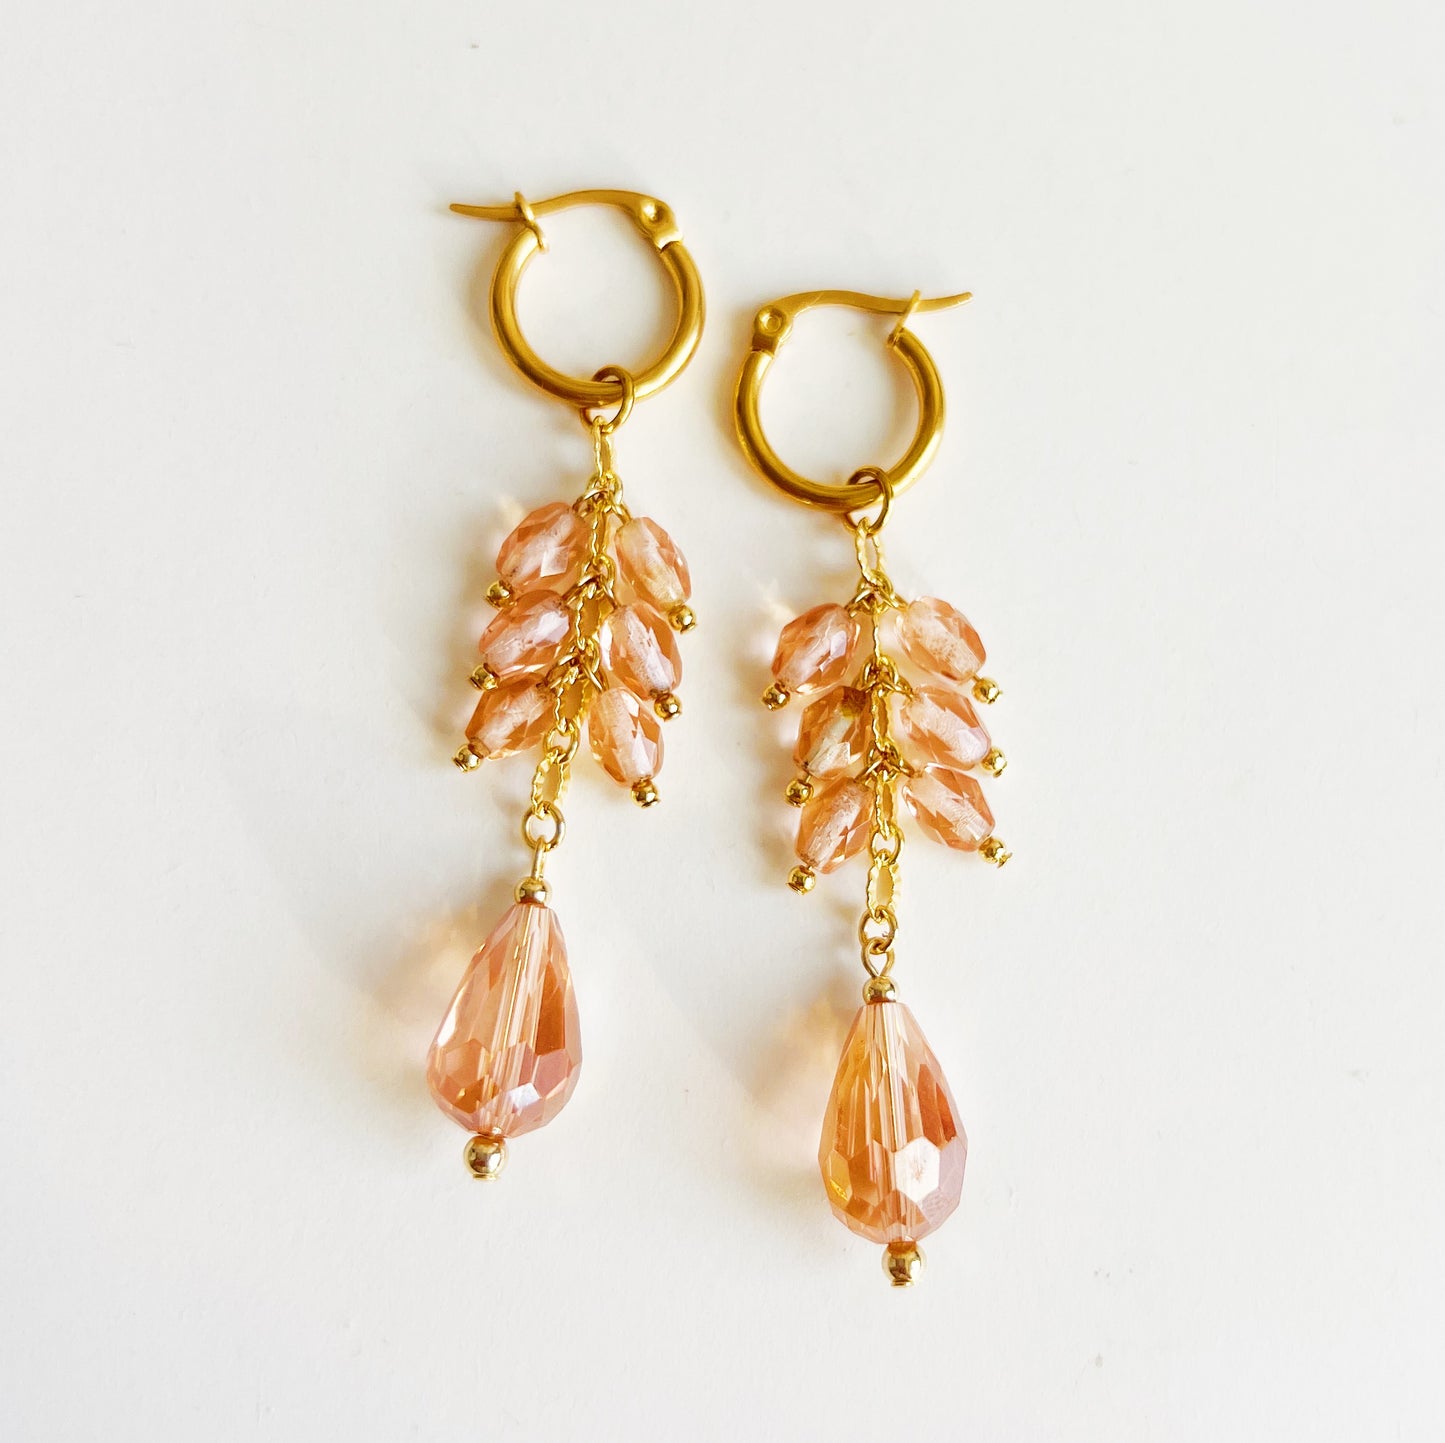 Peach glass earrings